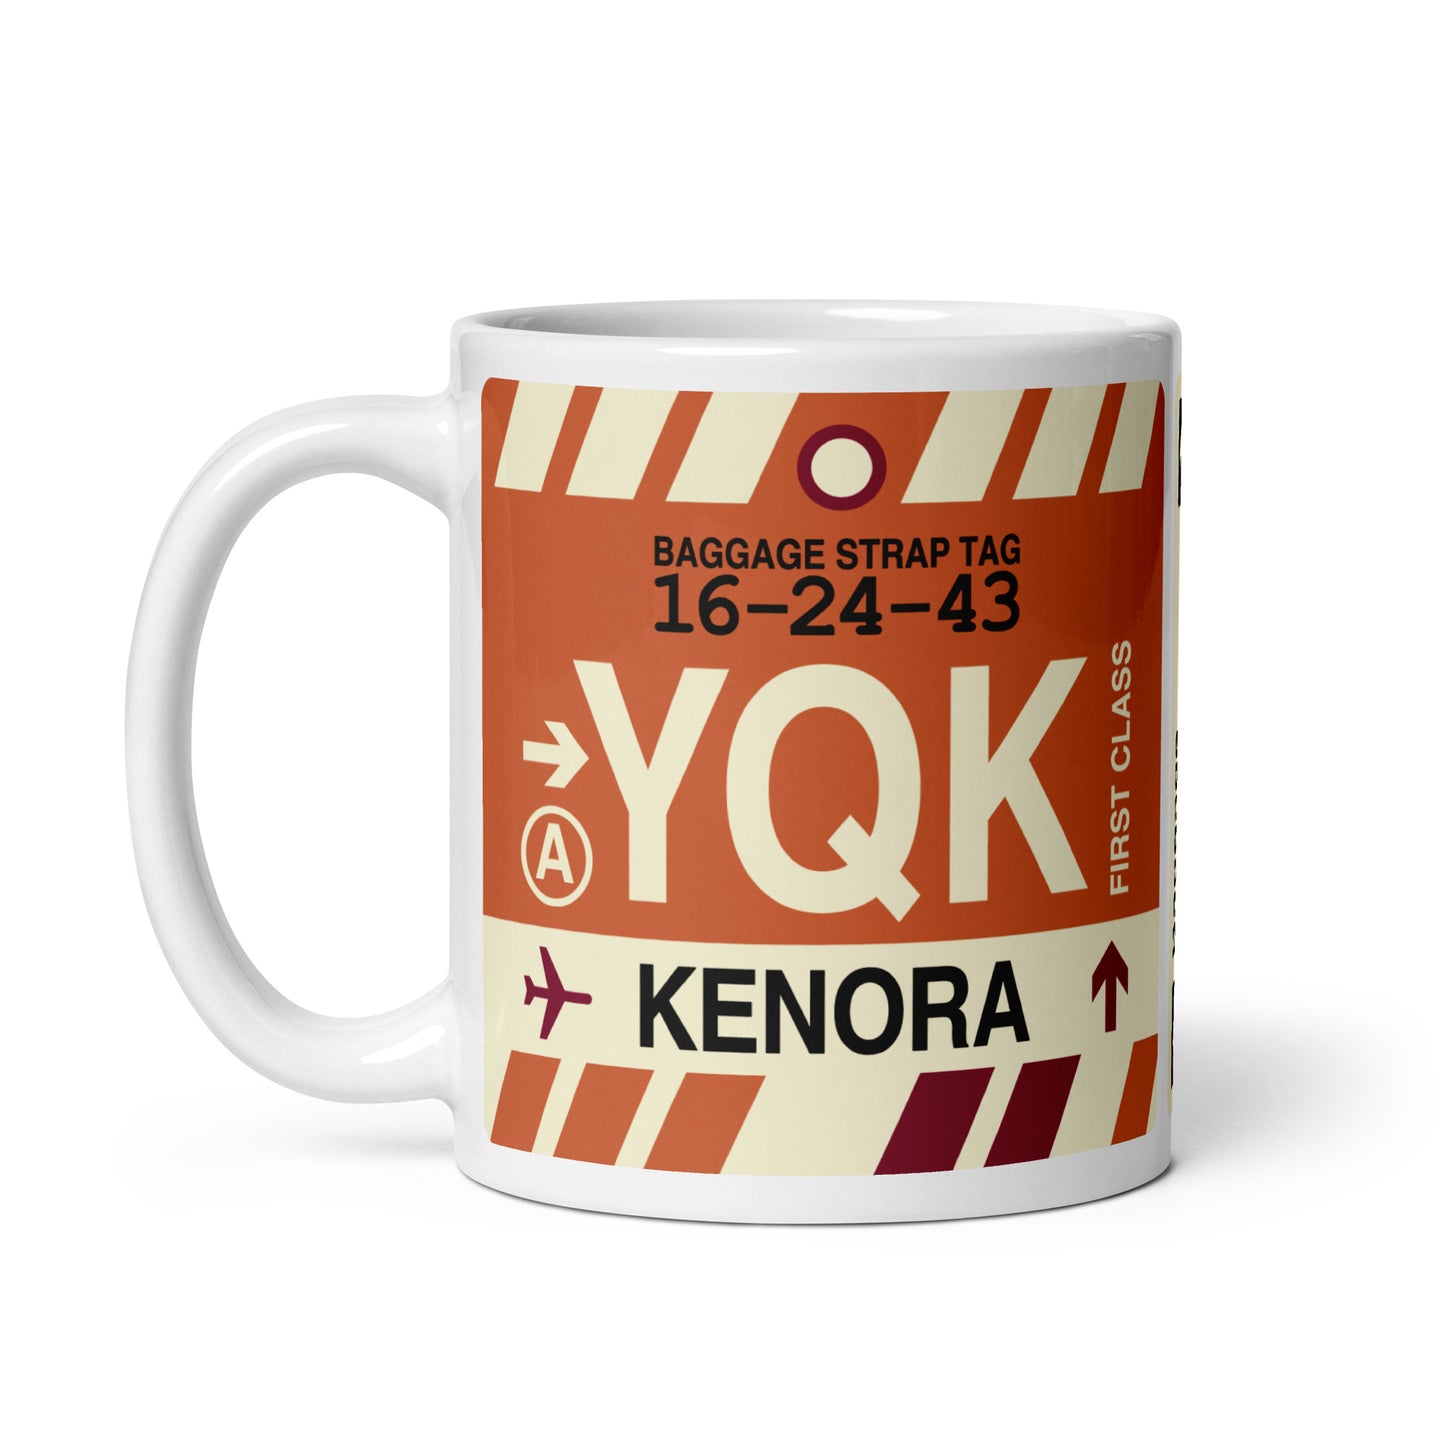 Travel Gift Coffee Mug • YQK Kenora • YHM Designs - Image 02